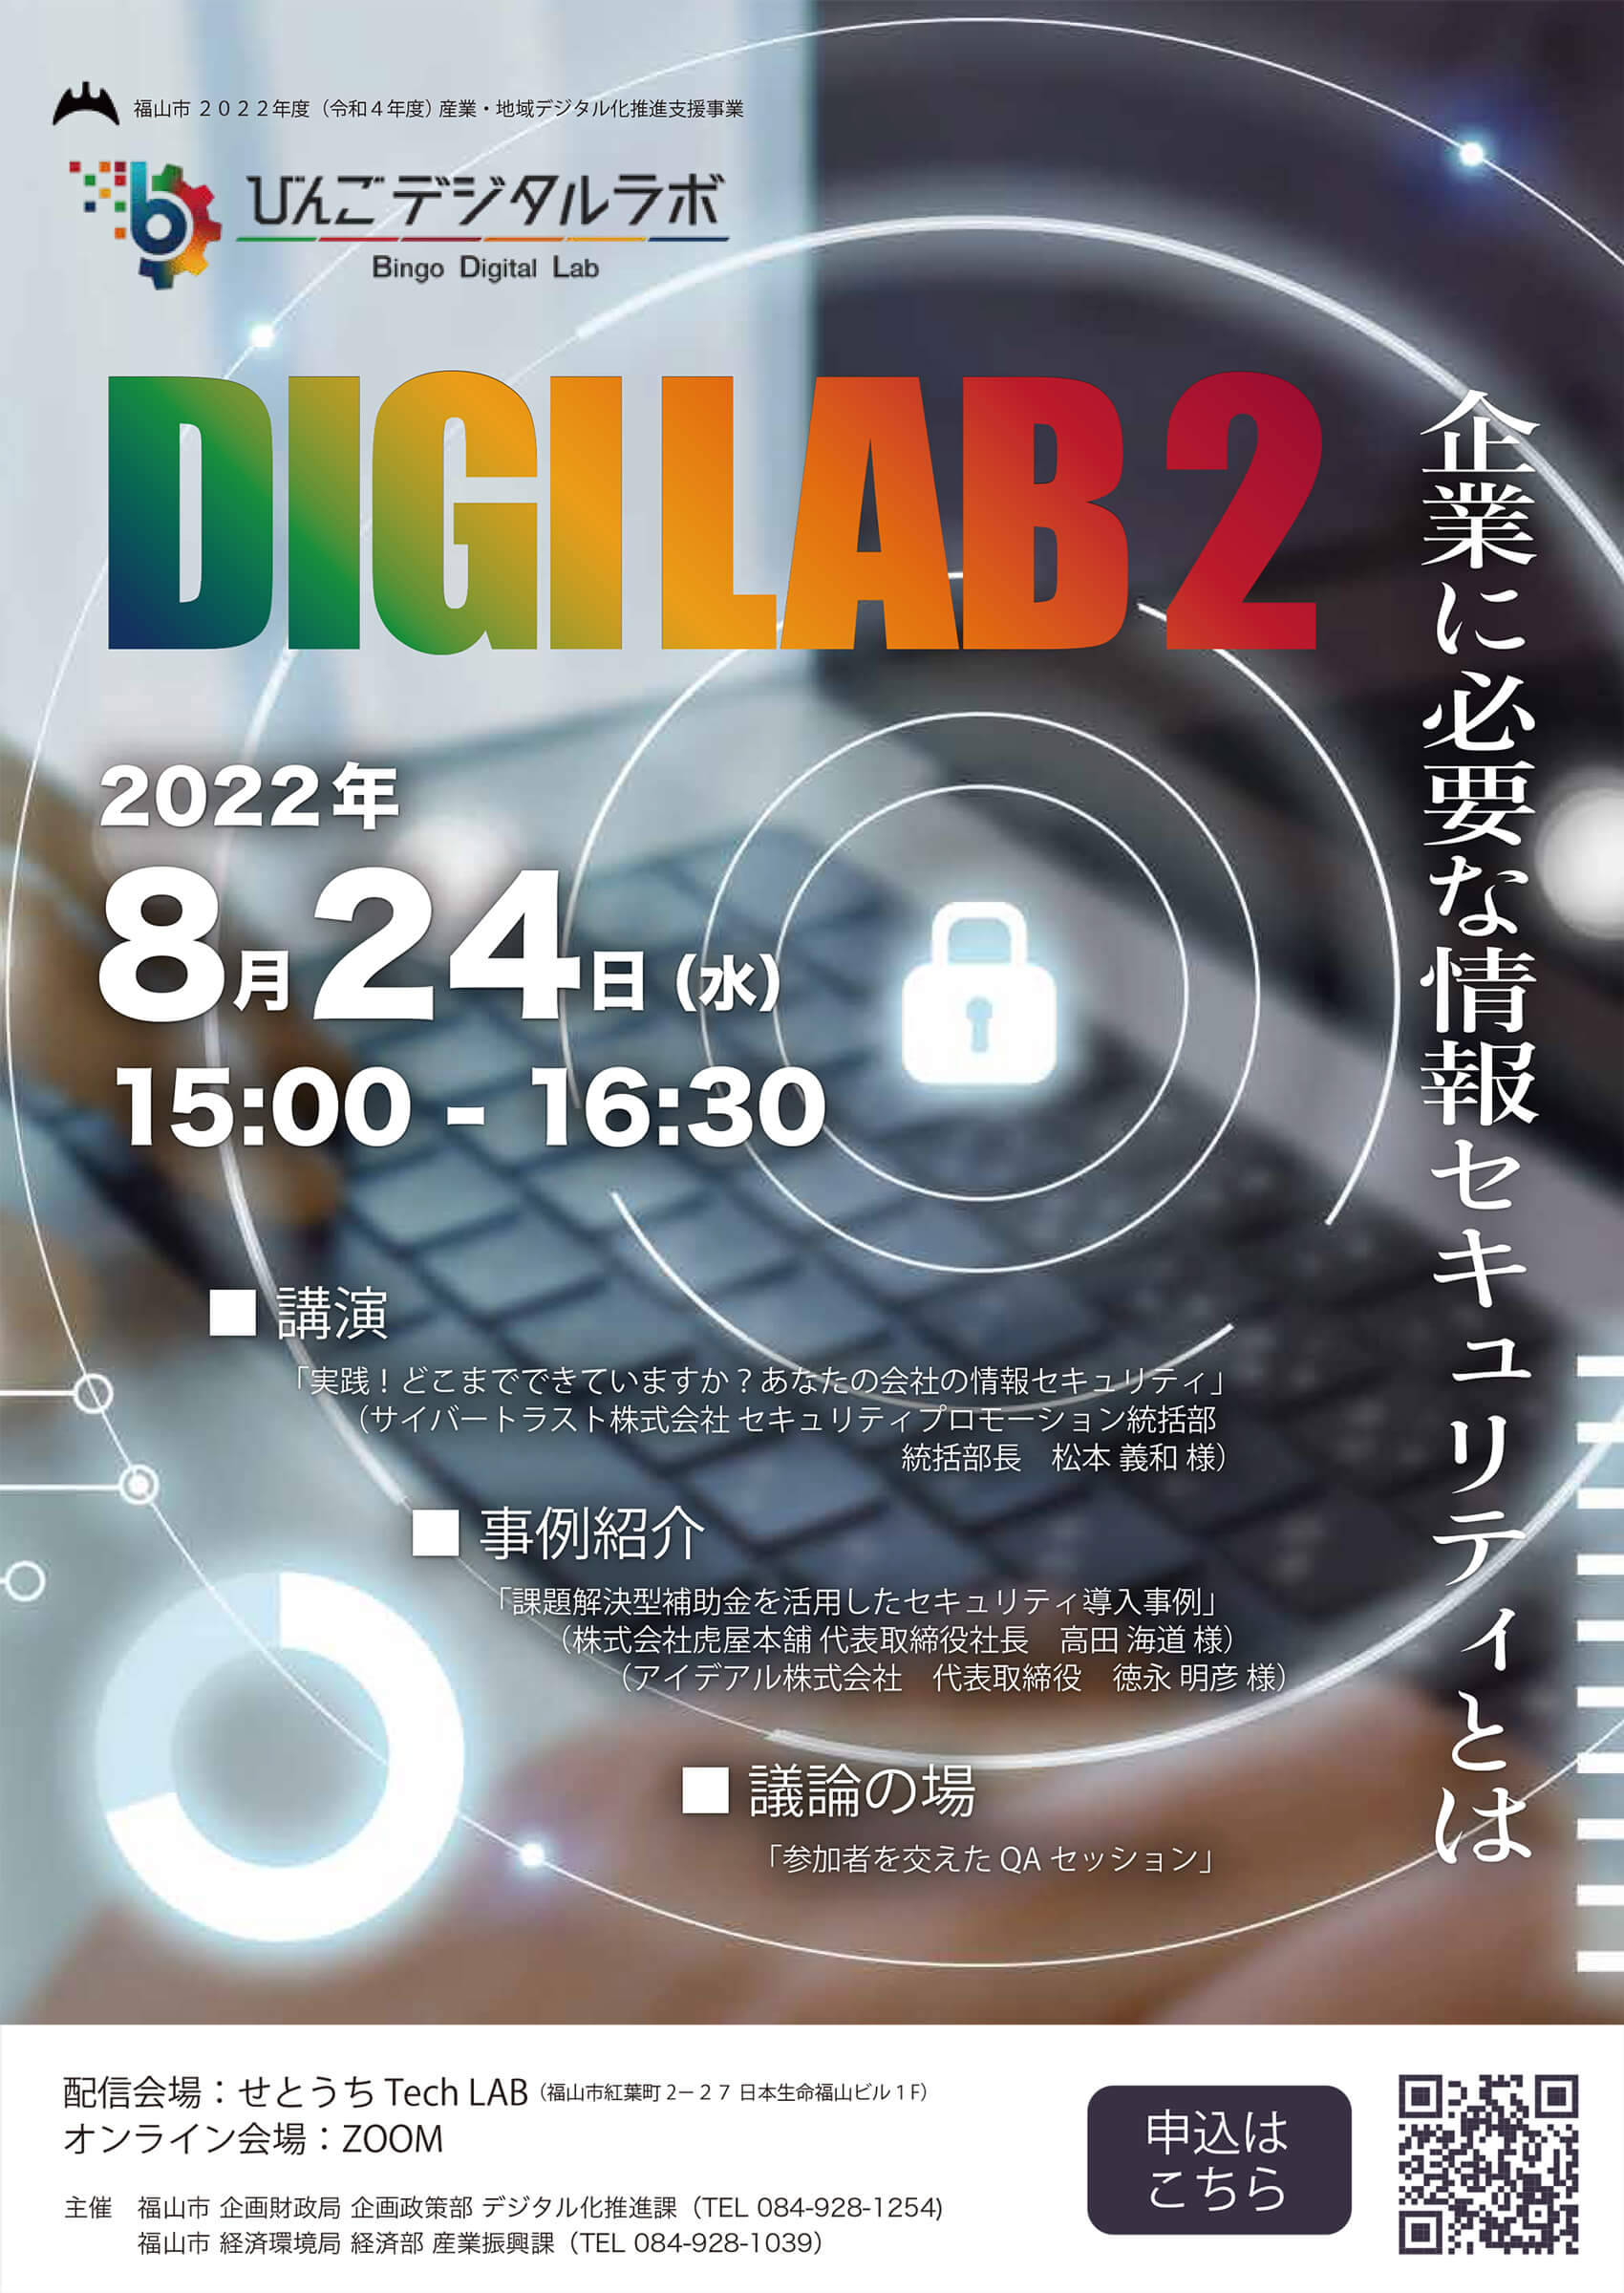 2022年度 第2回びんごデジタルラボイベント『DIGILAB2』をおこないます催